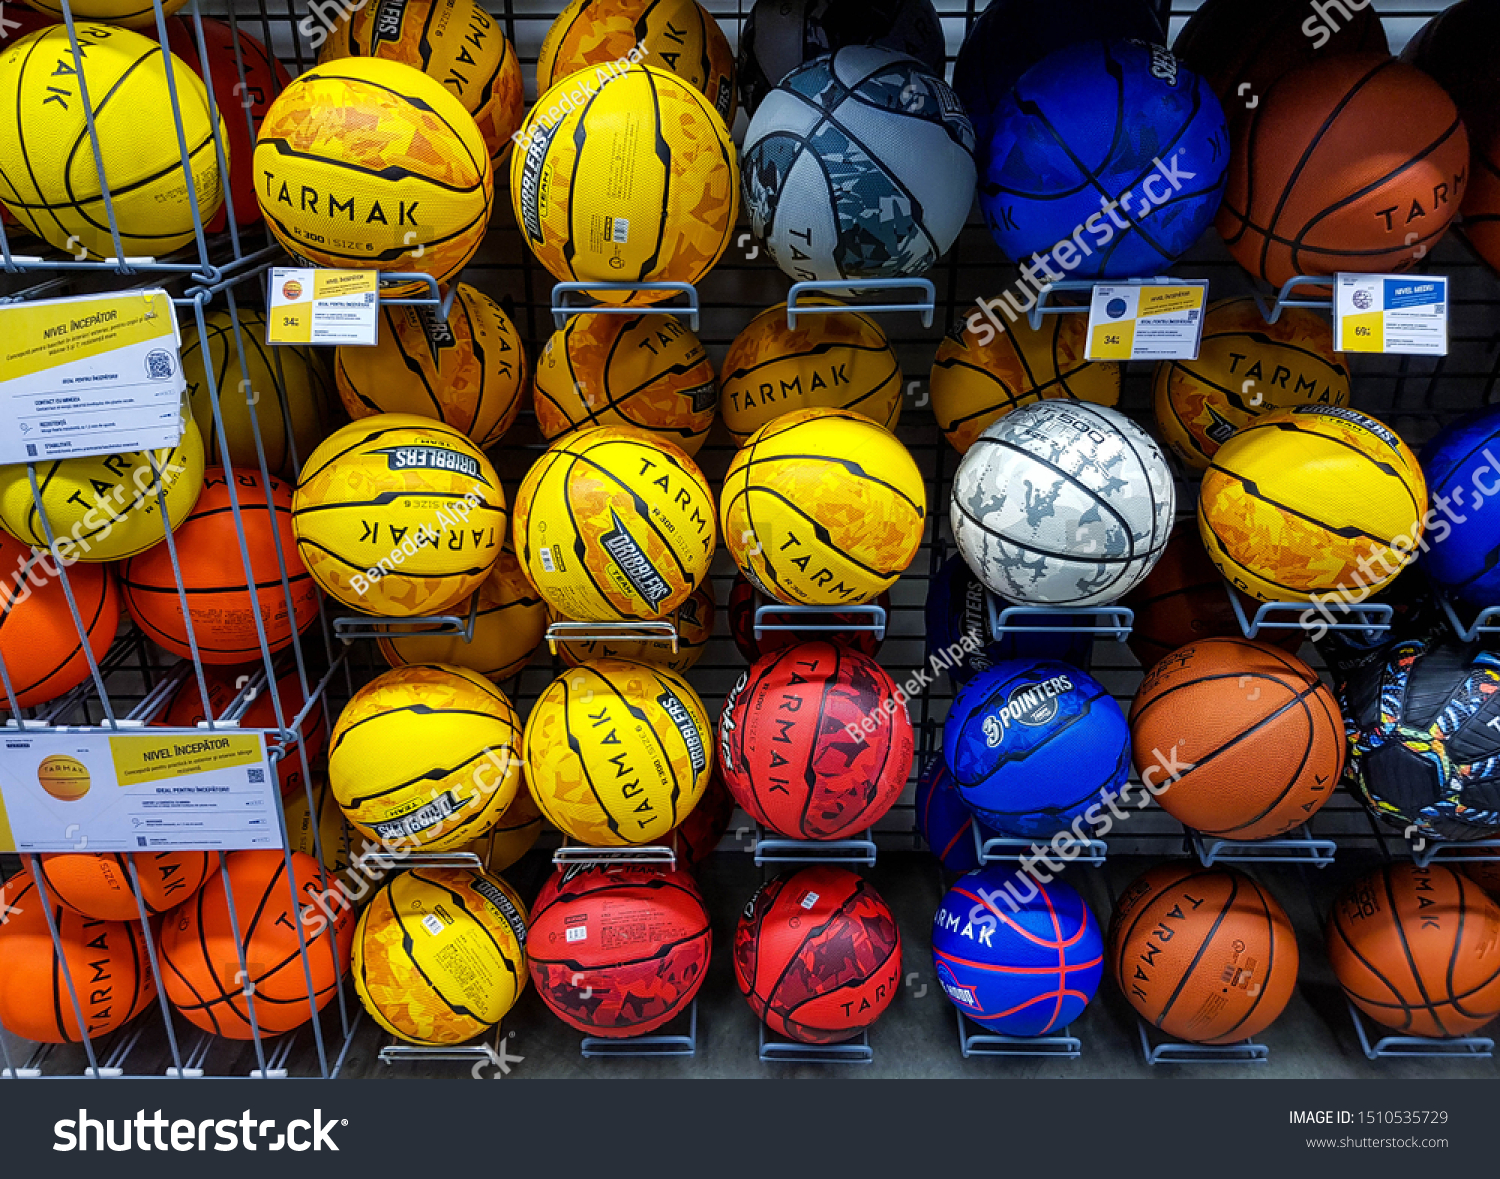 tarmak basketball ball